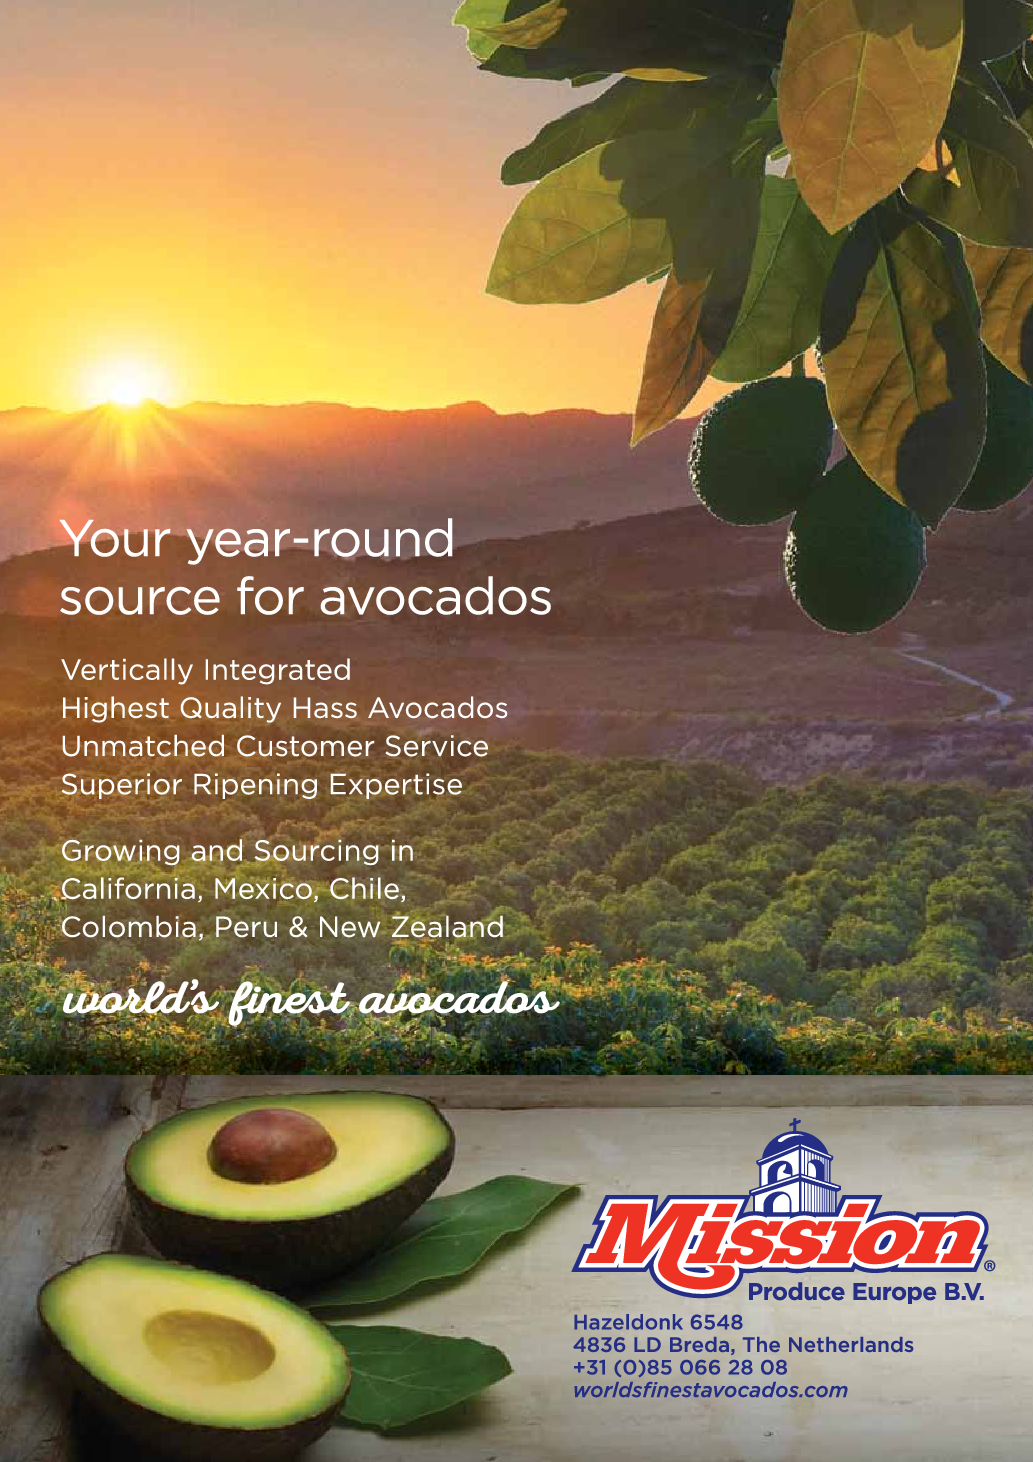 EU avocado market segmentation